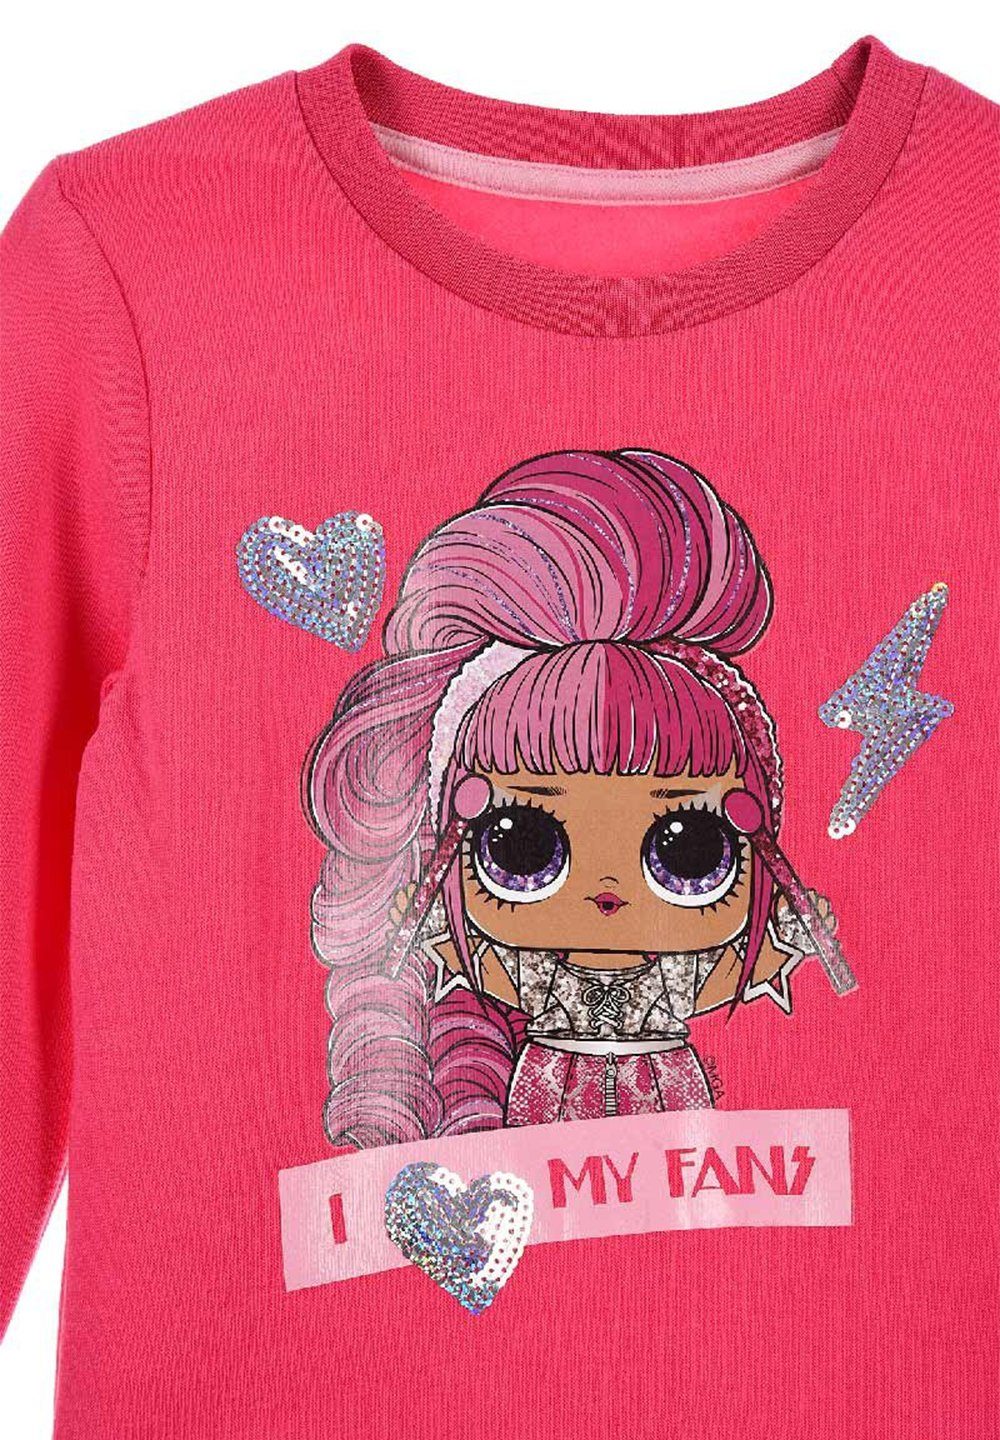 für Mädchen 3-8 Jahre Motiv Puppen LOL Surprise Kinderpullover Sweatshirt l.o.l 